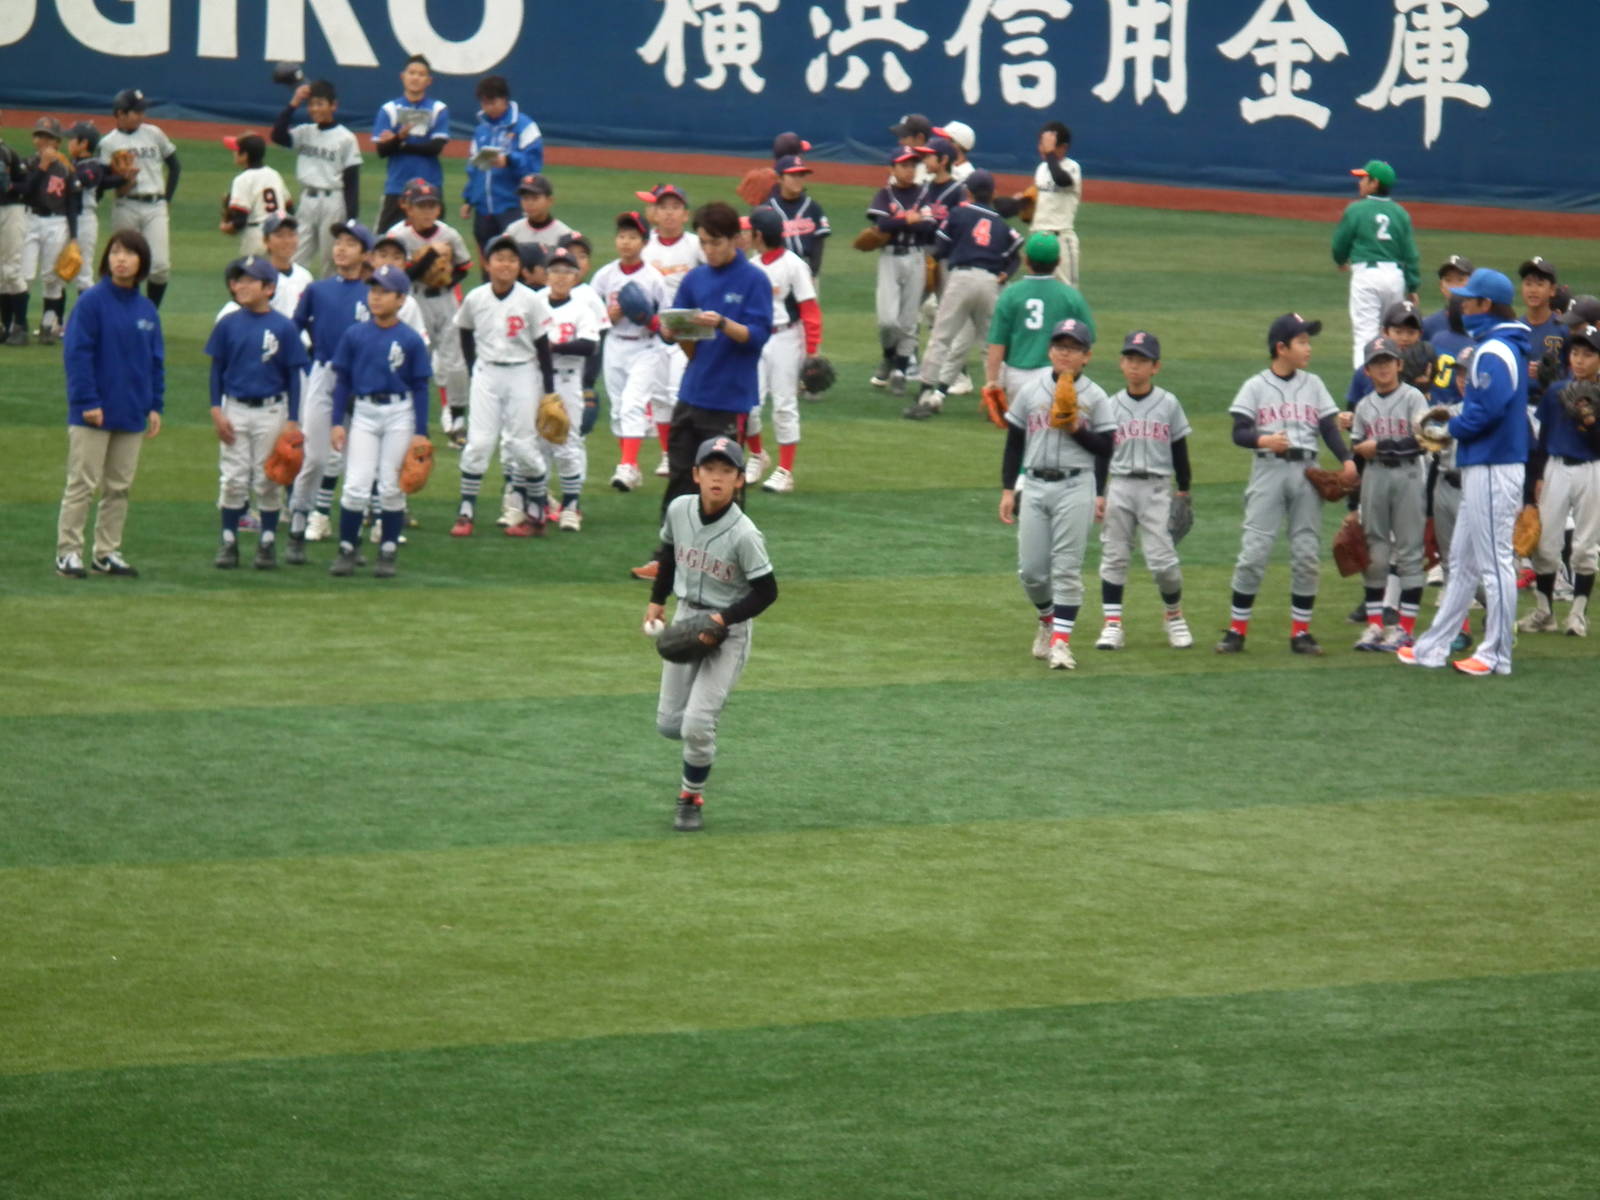 ベイスターズ野球教室 11月23日 祝 於 横浜スタジアム 篠原イーグルスのblog